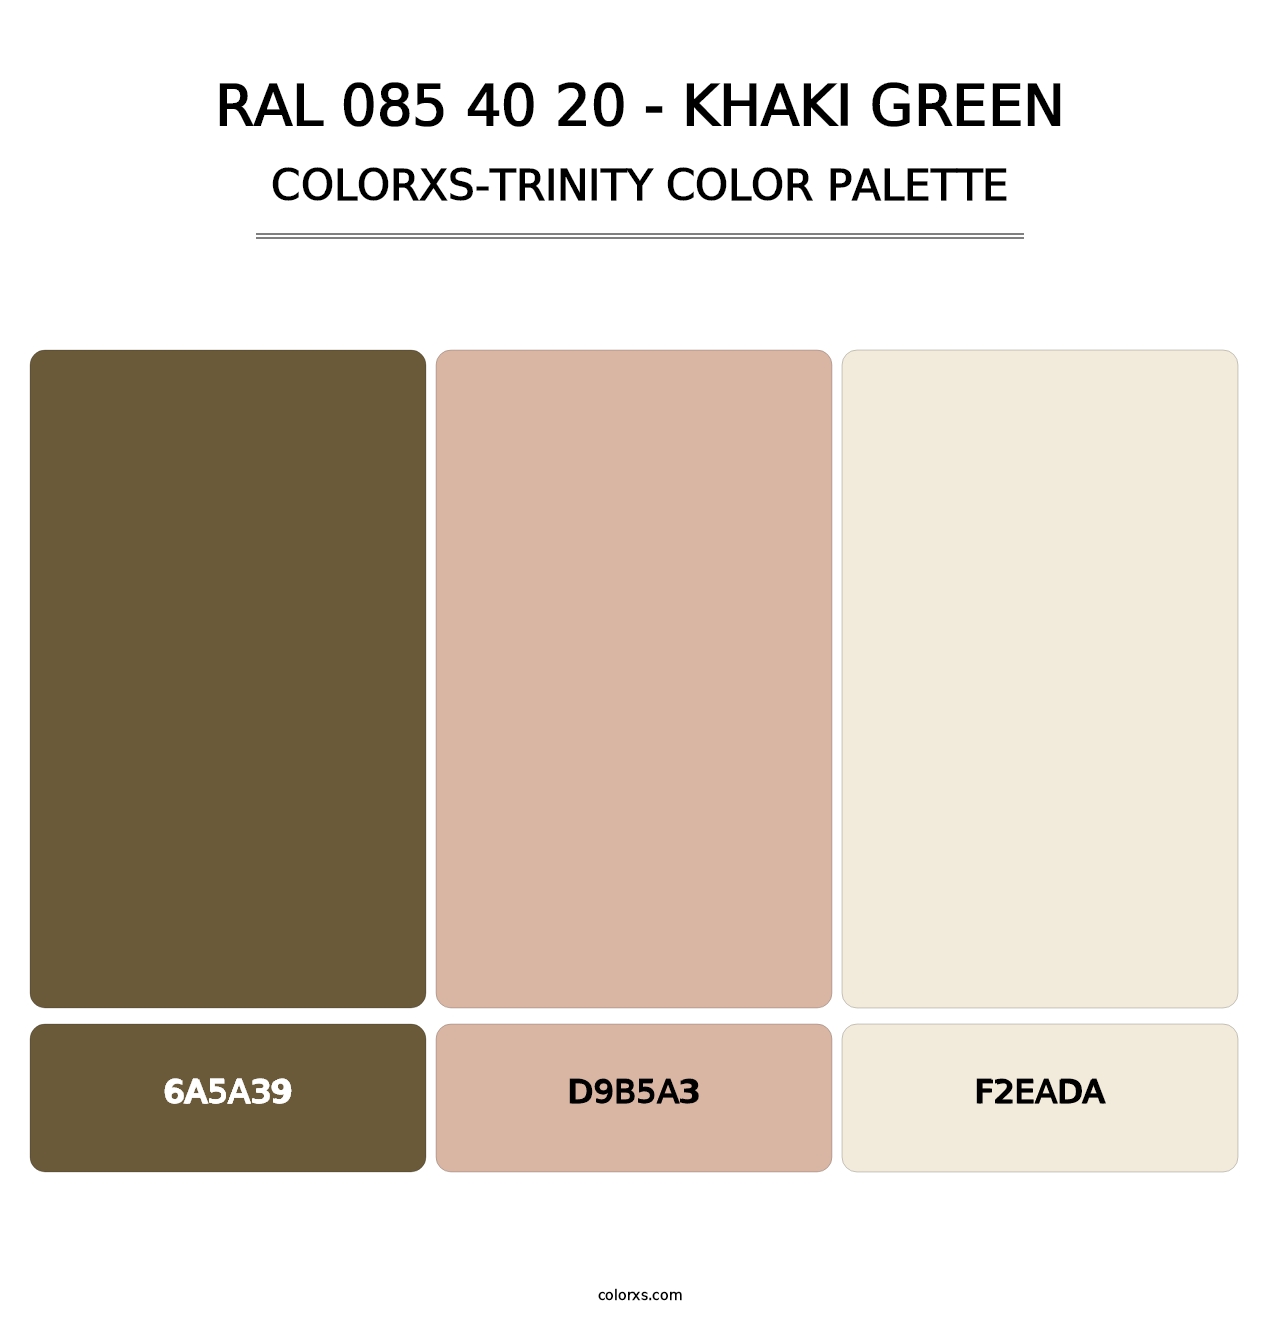 RAL 085 40 20 - Khaki Green - Colorxs Trinity Palette